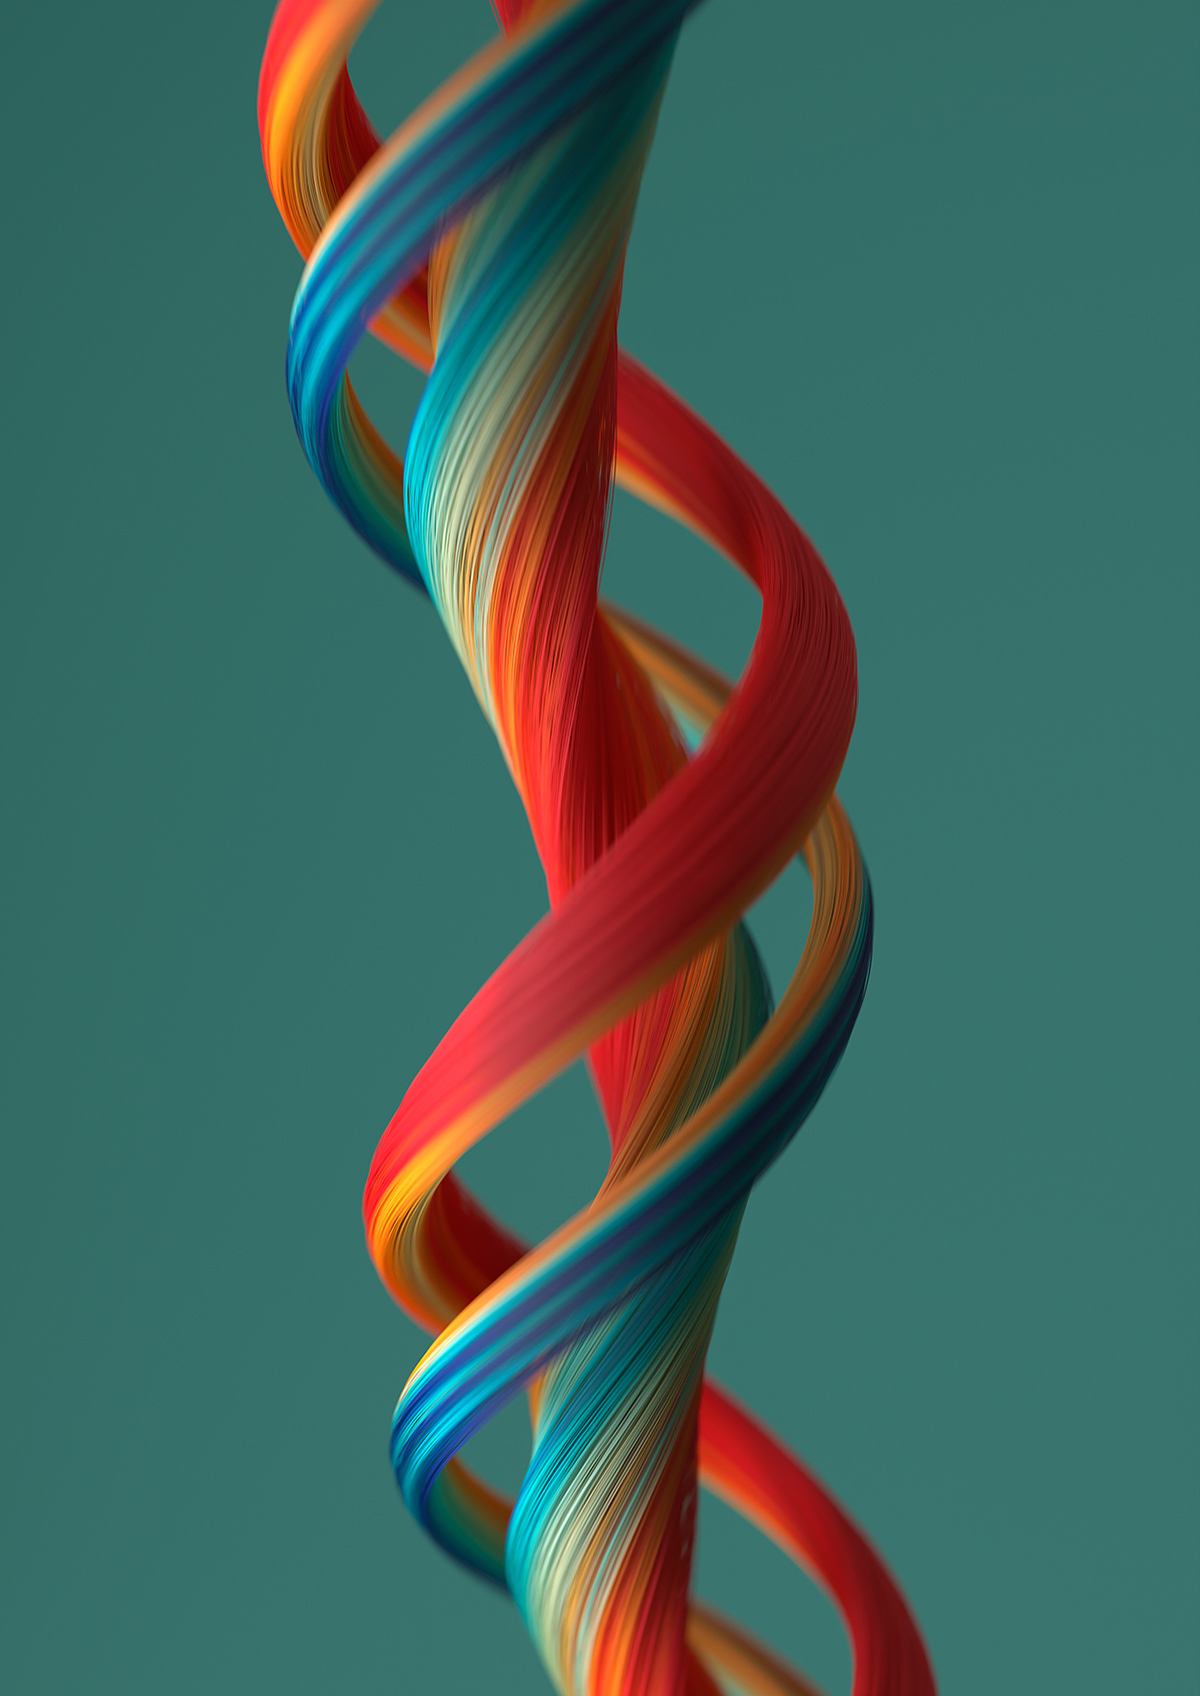 color hair lines oscilating rainbow ribbon Spiral thin waves waving